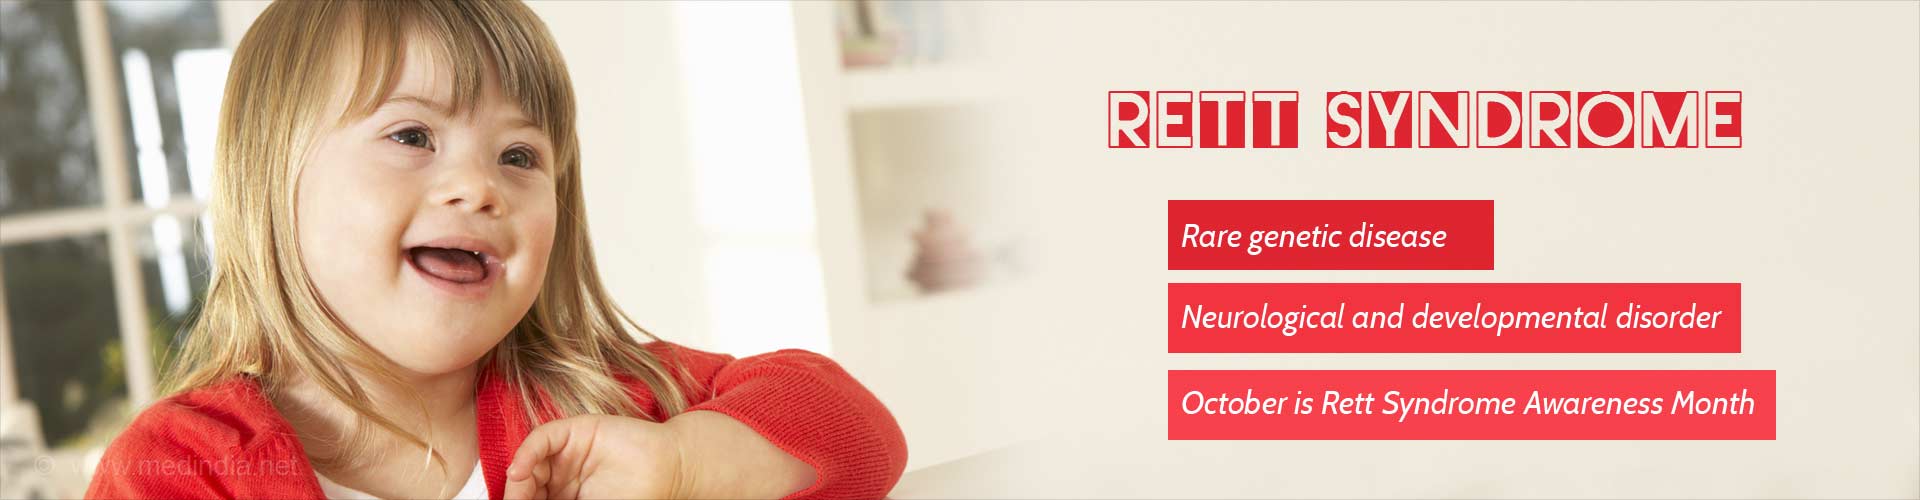 Rett Syndrome
- Rare genetic disease
- Neurological and developmental disorder
- October is Rett Syndrome Awareness Month